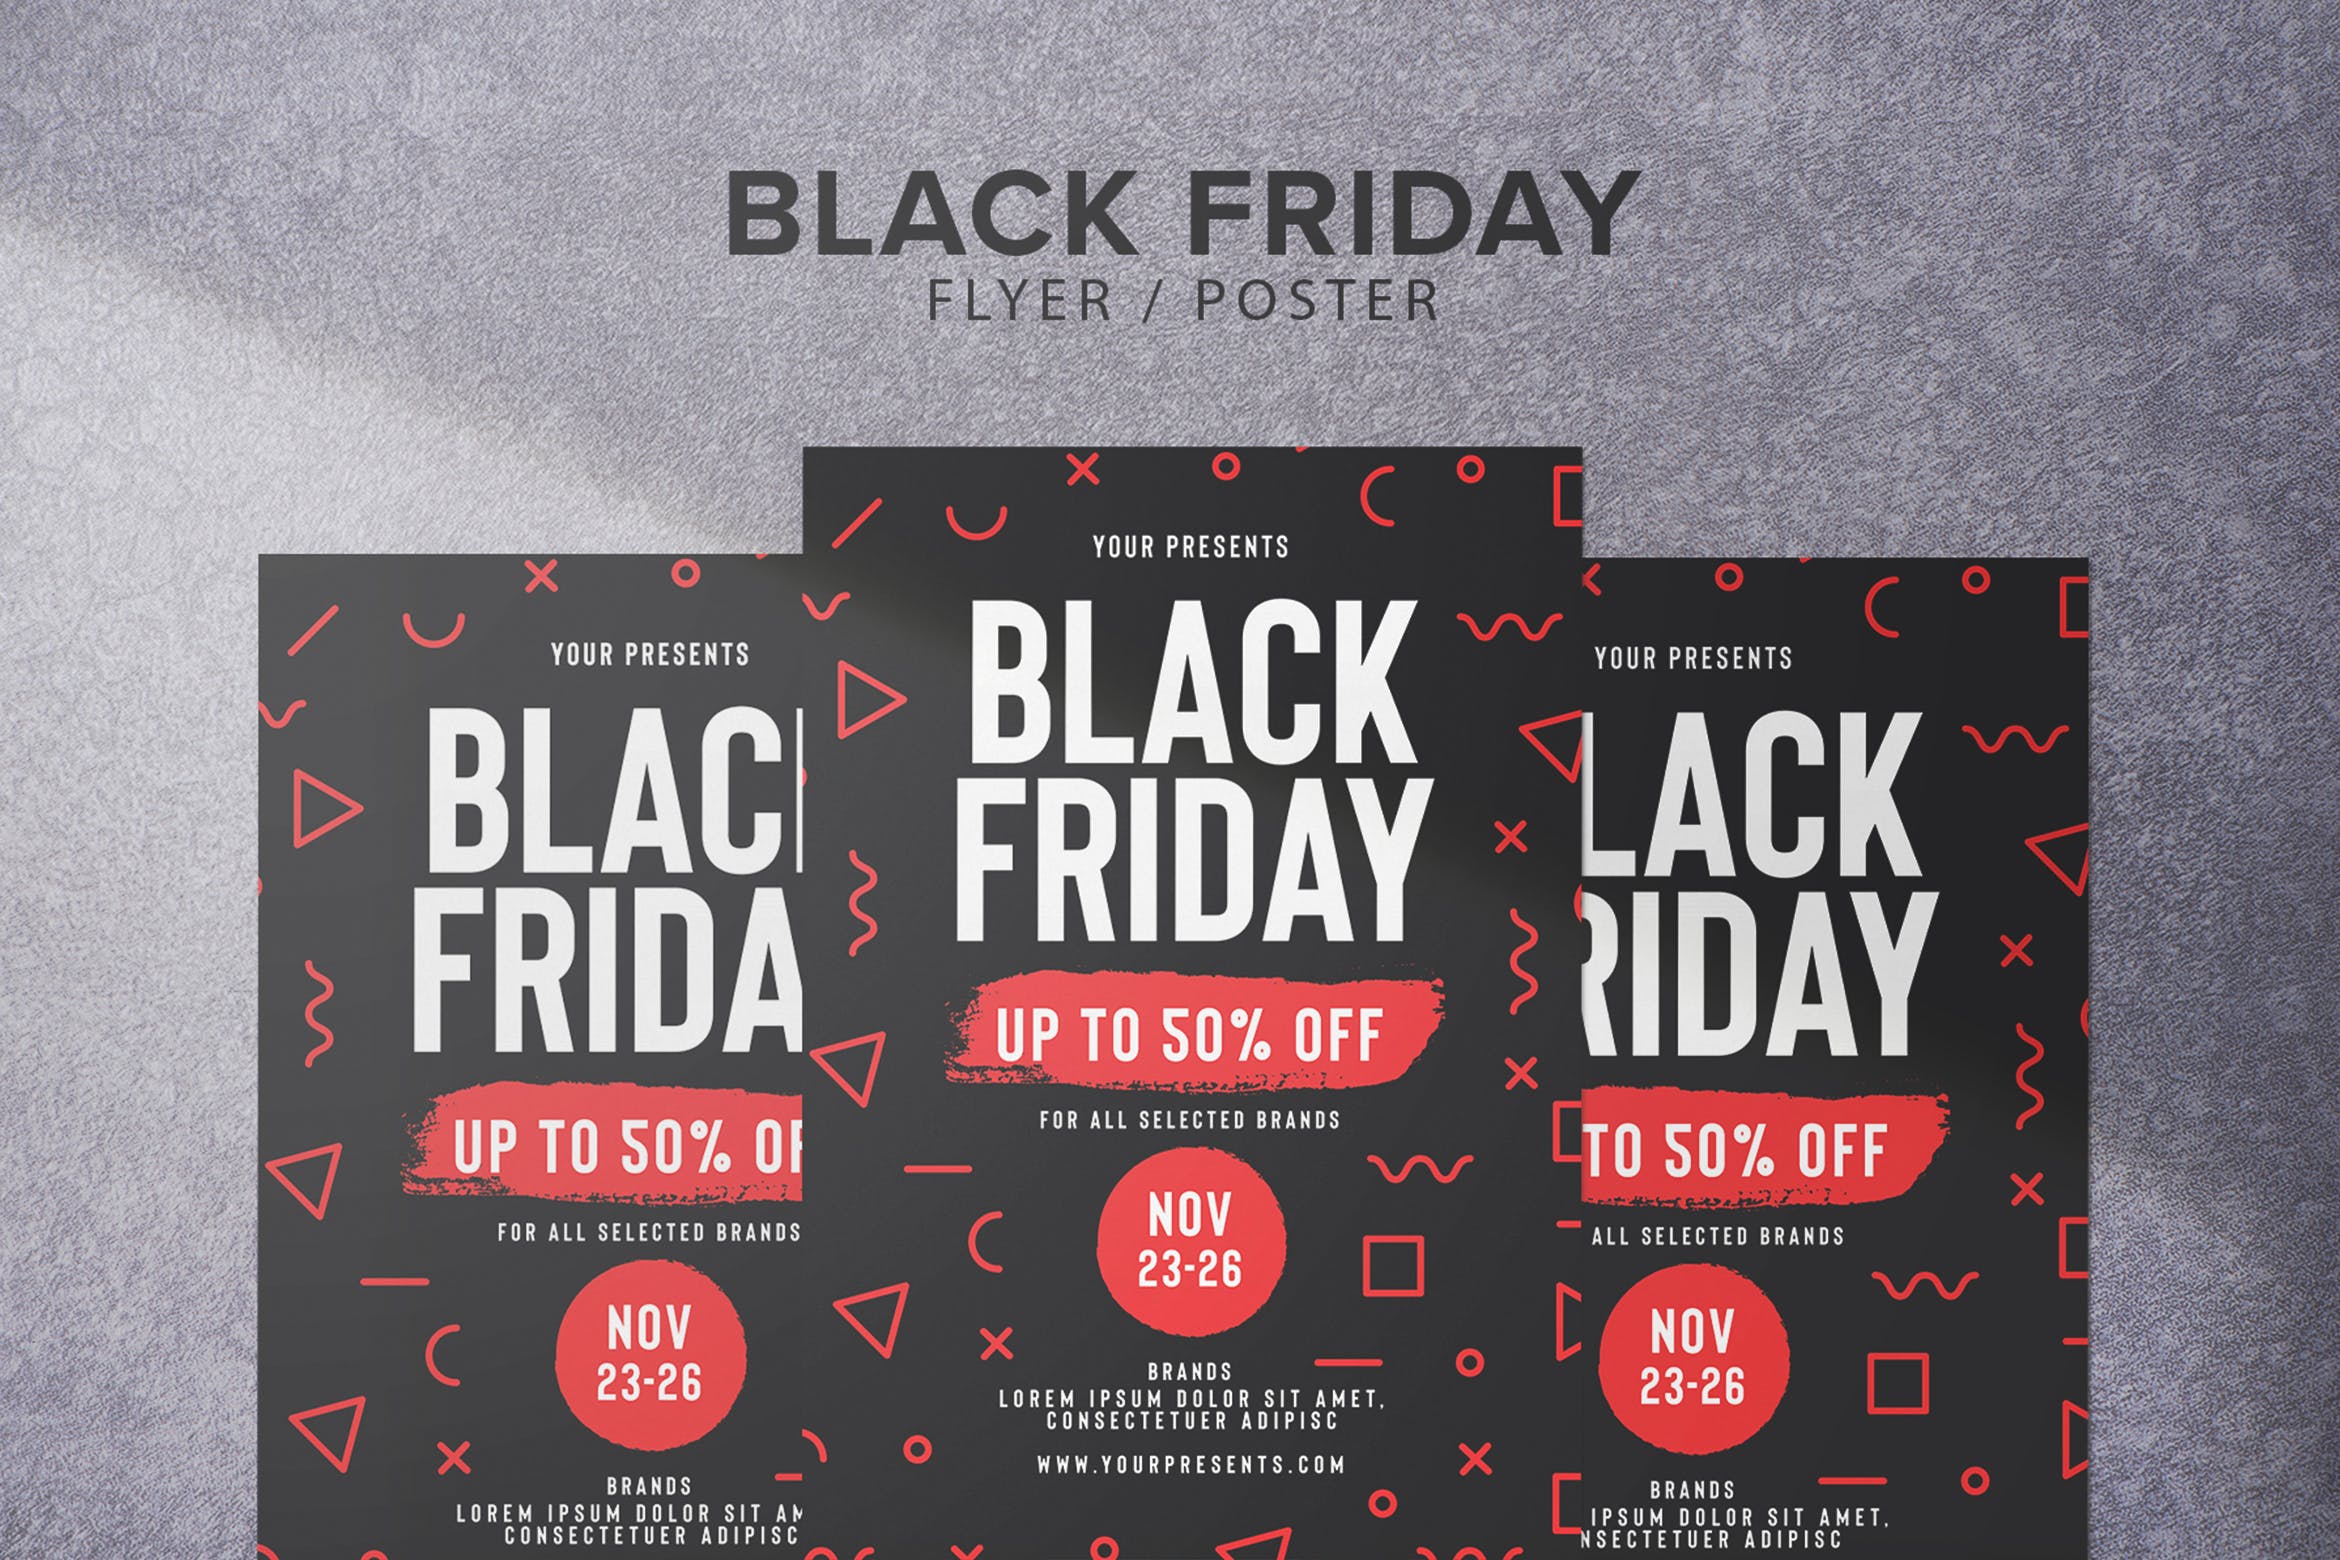 黑色星期五超低折扣活动海报传单设计模板 Black Friday Flyer插图